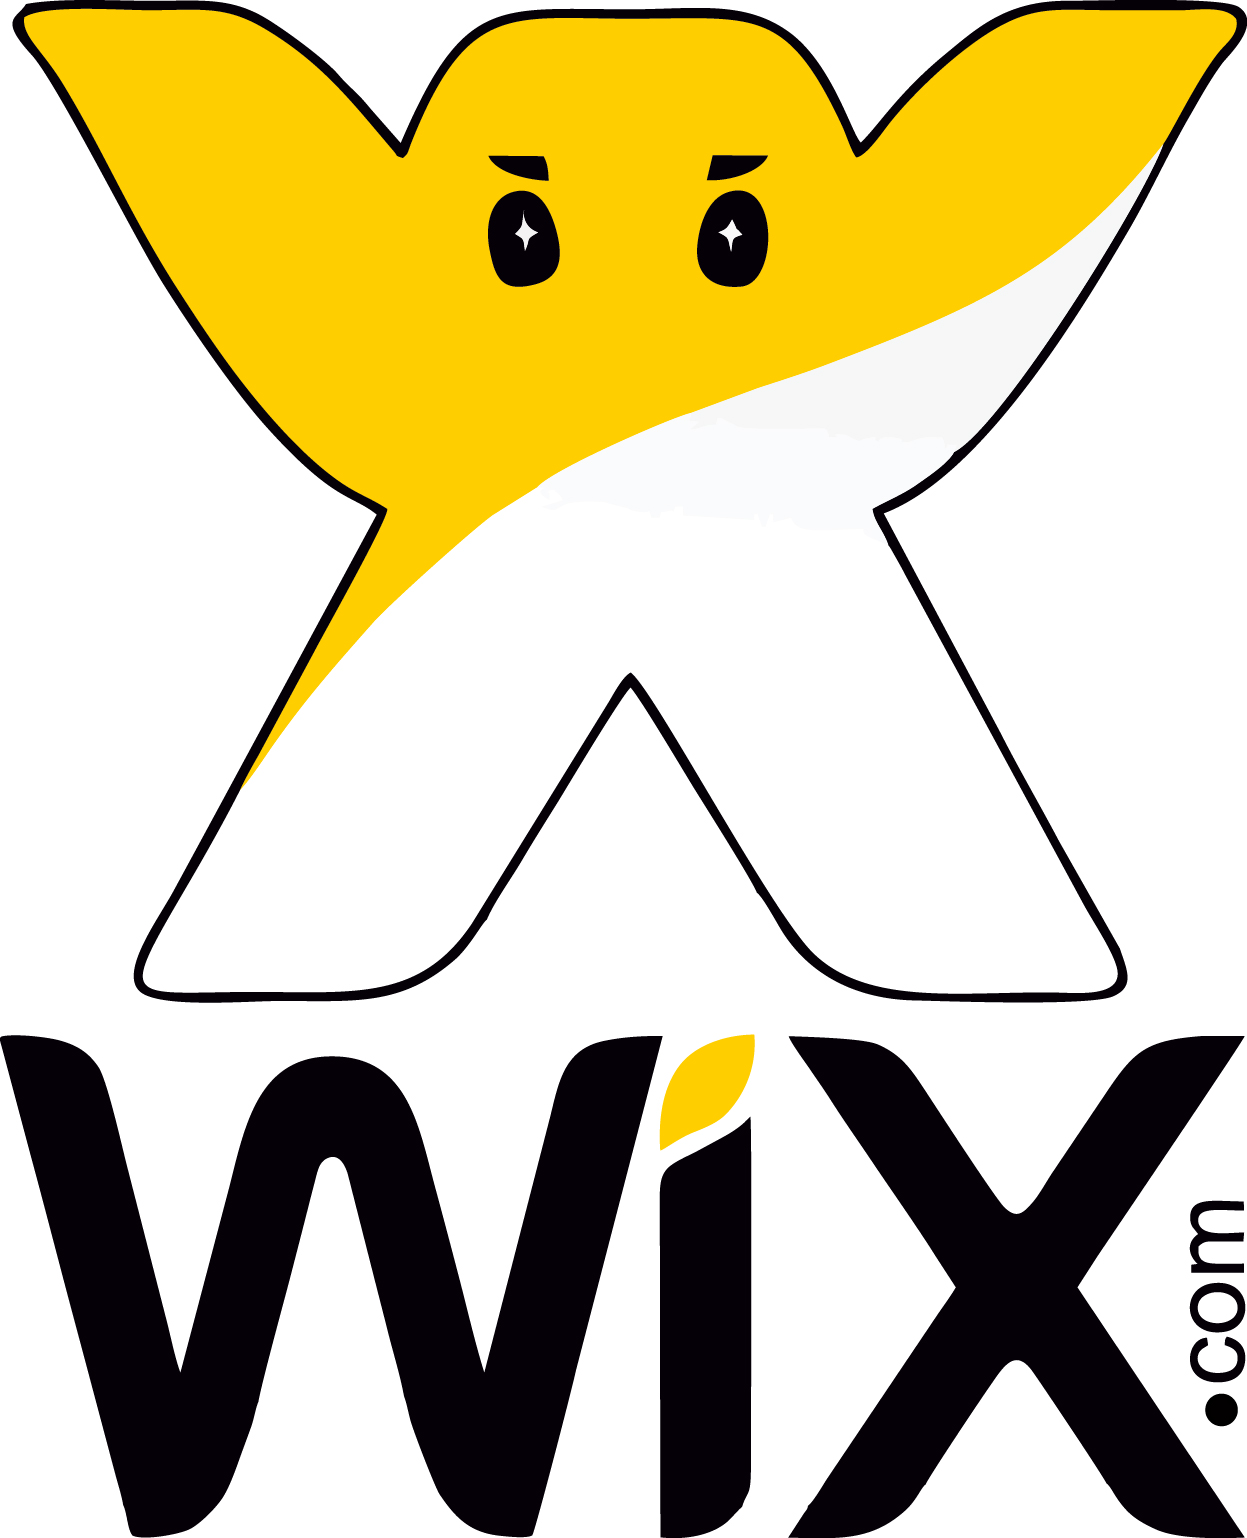 Бесплатный сайт wix com. Wix логотип. Логотип конструктора Wix. Wix логотип PNG. Лого Викс конструктор сайта.